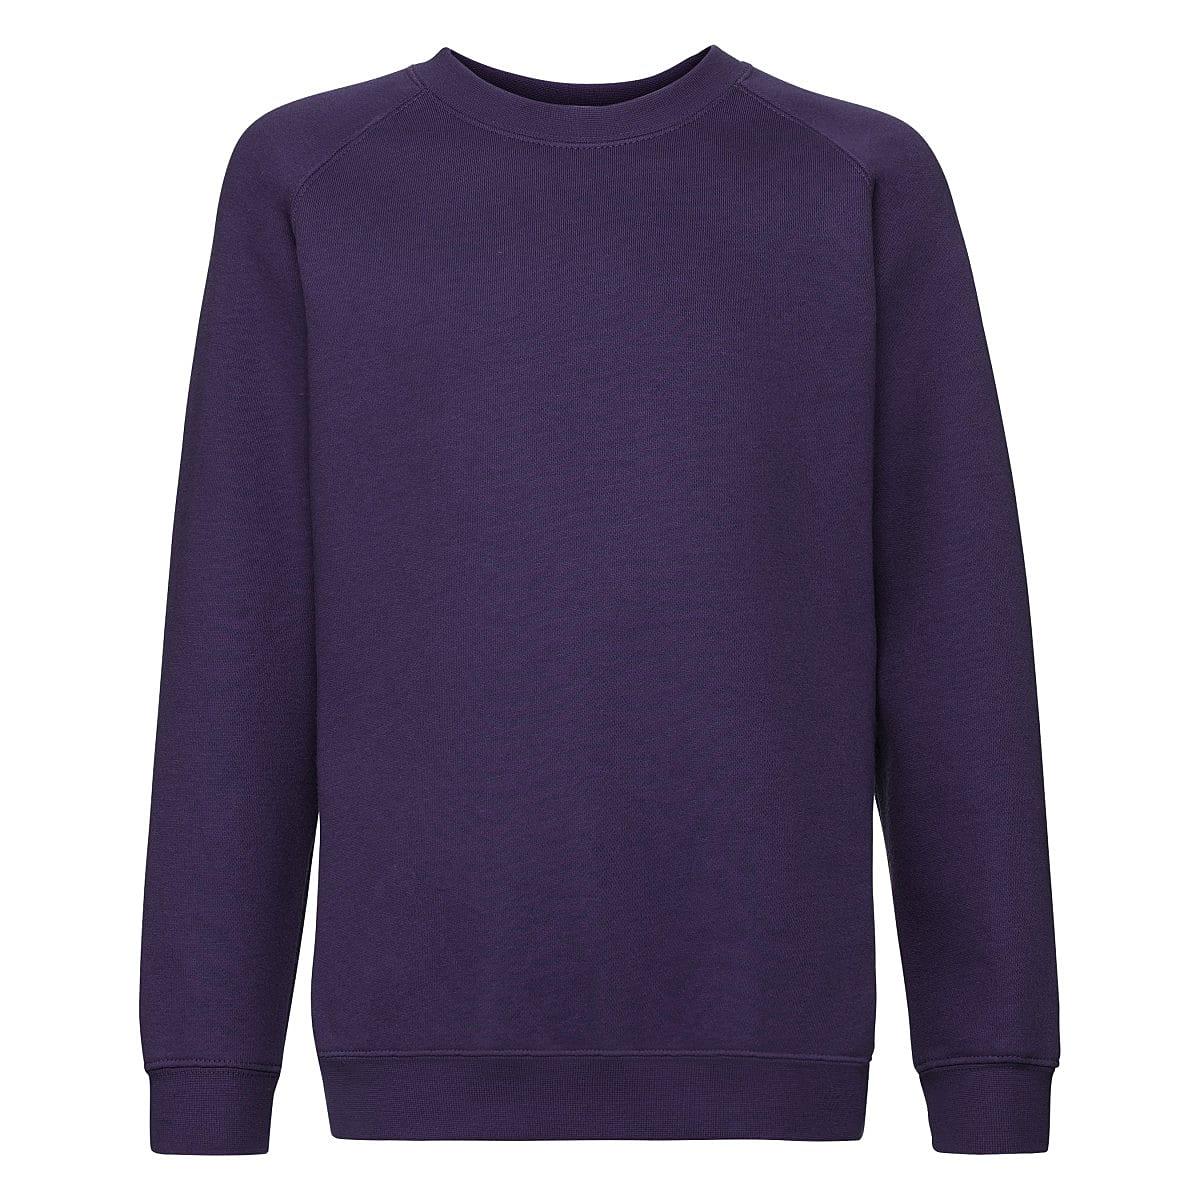 Fruit Of The Loom Childrens Premium Raglan Sleeve Sweatshirt in Purple (Product Code: 62033)